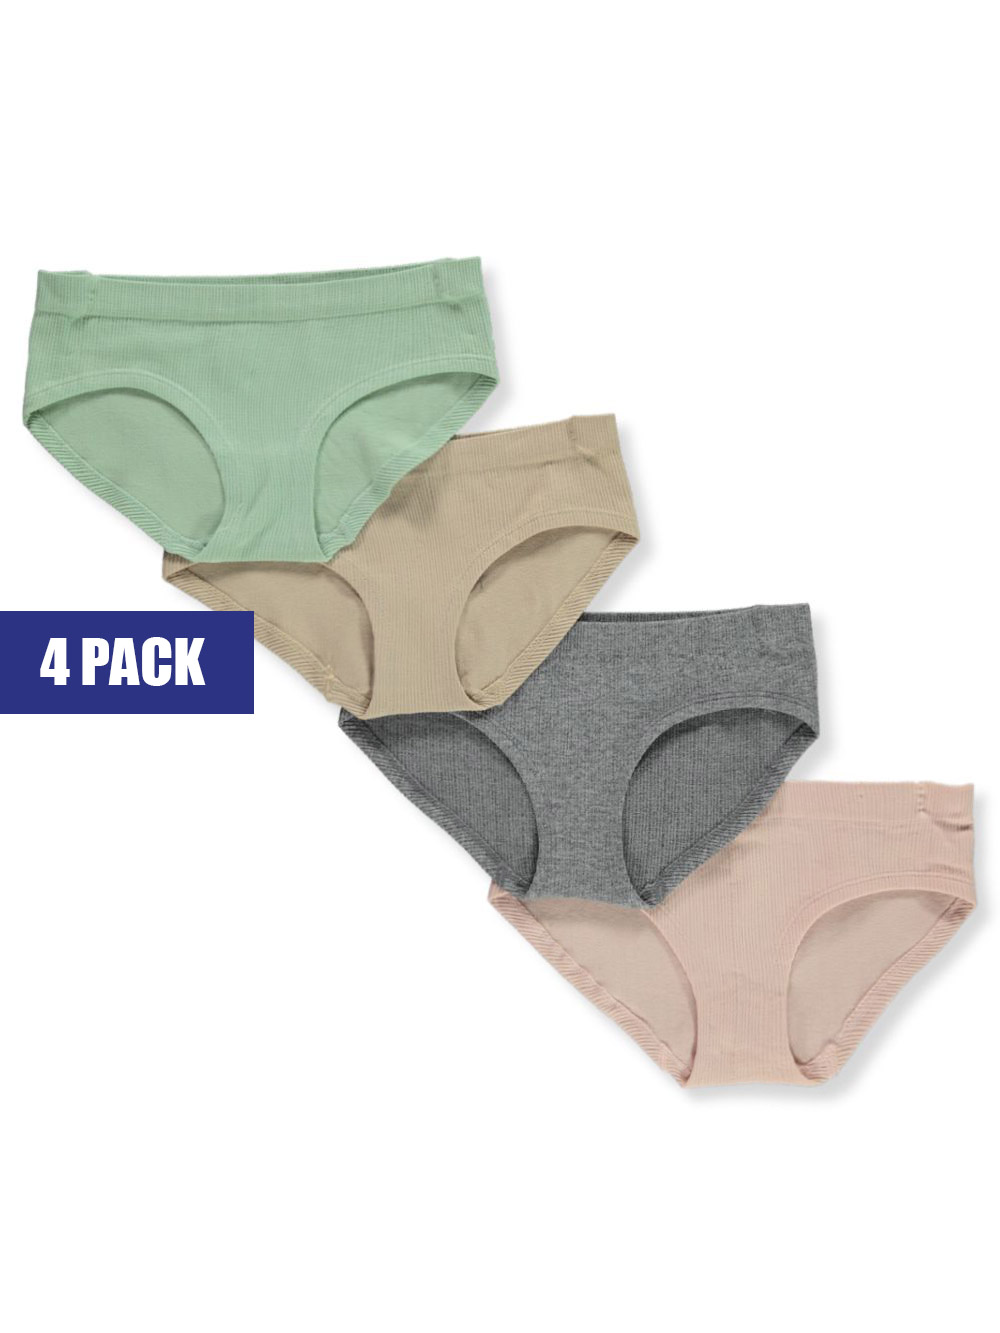 Inteco Girls' 4-Pack Underwear